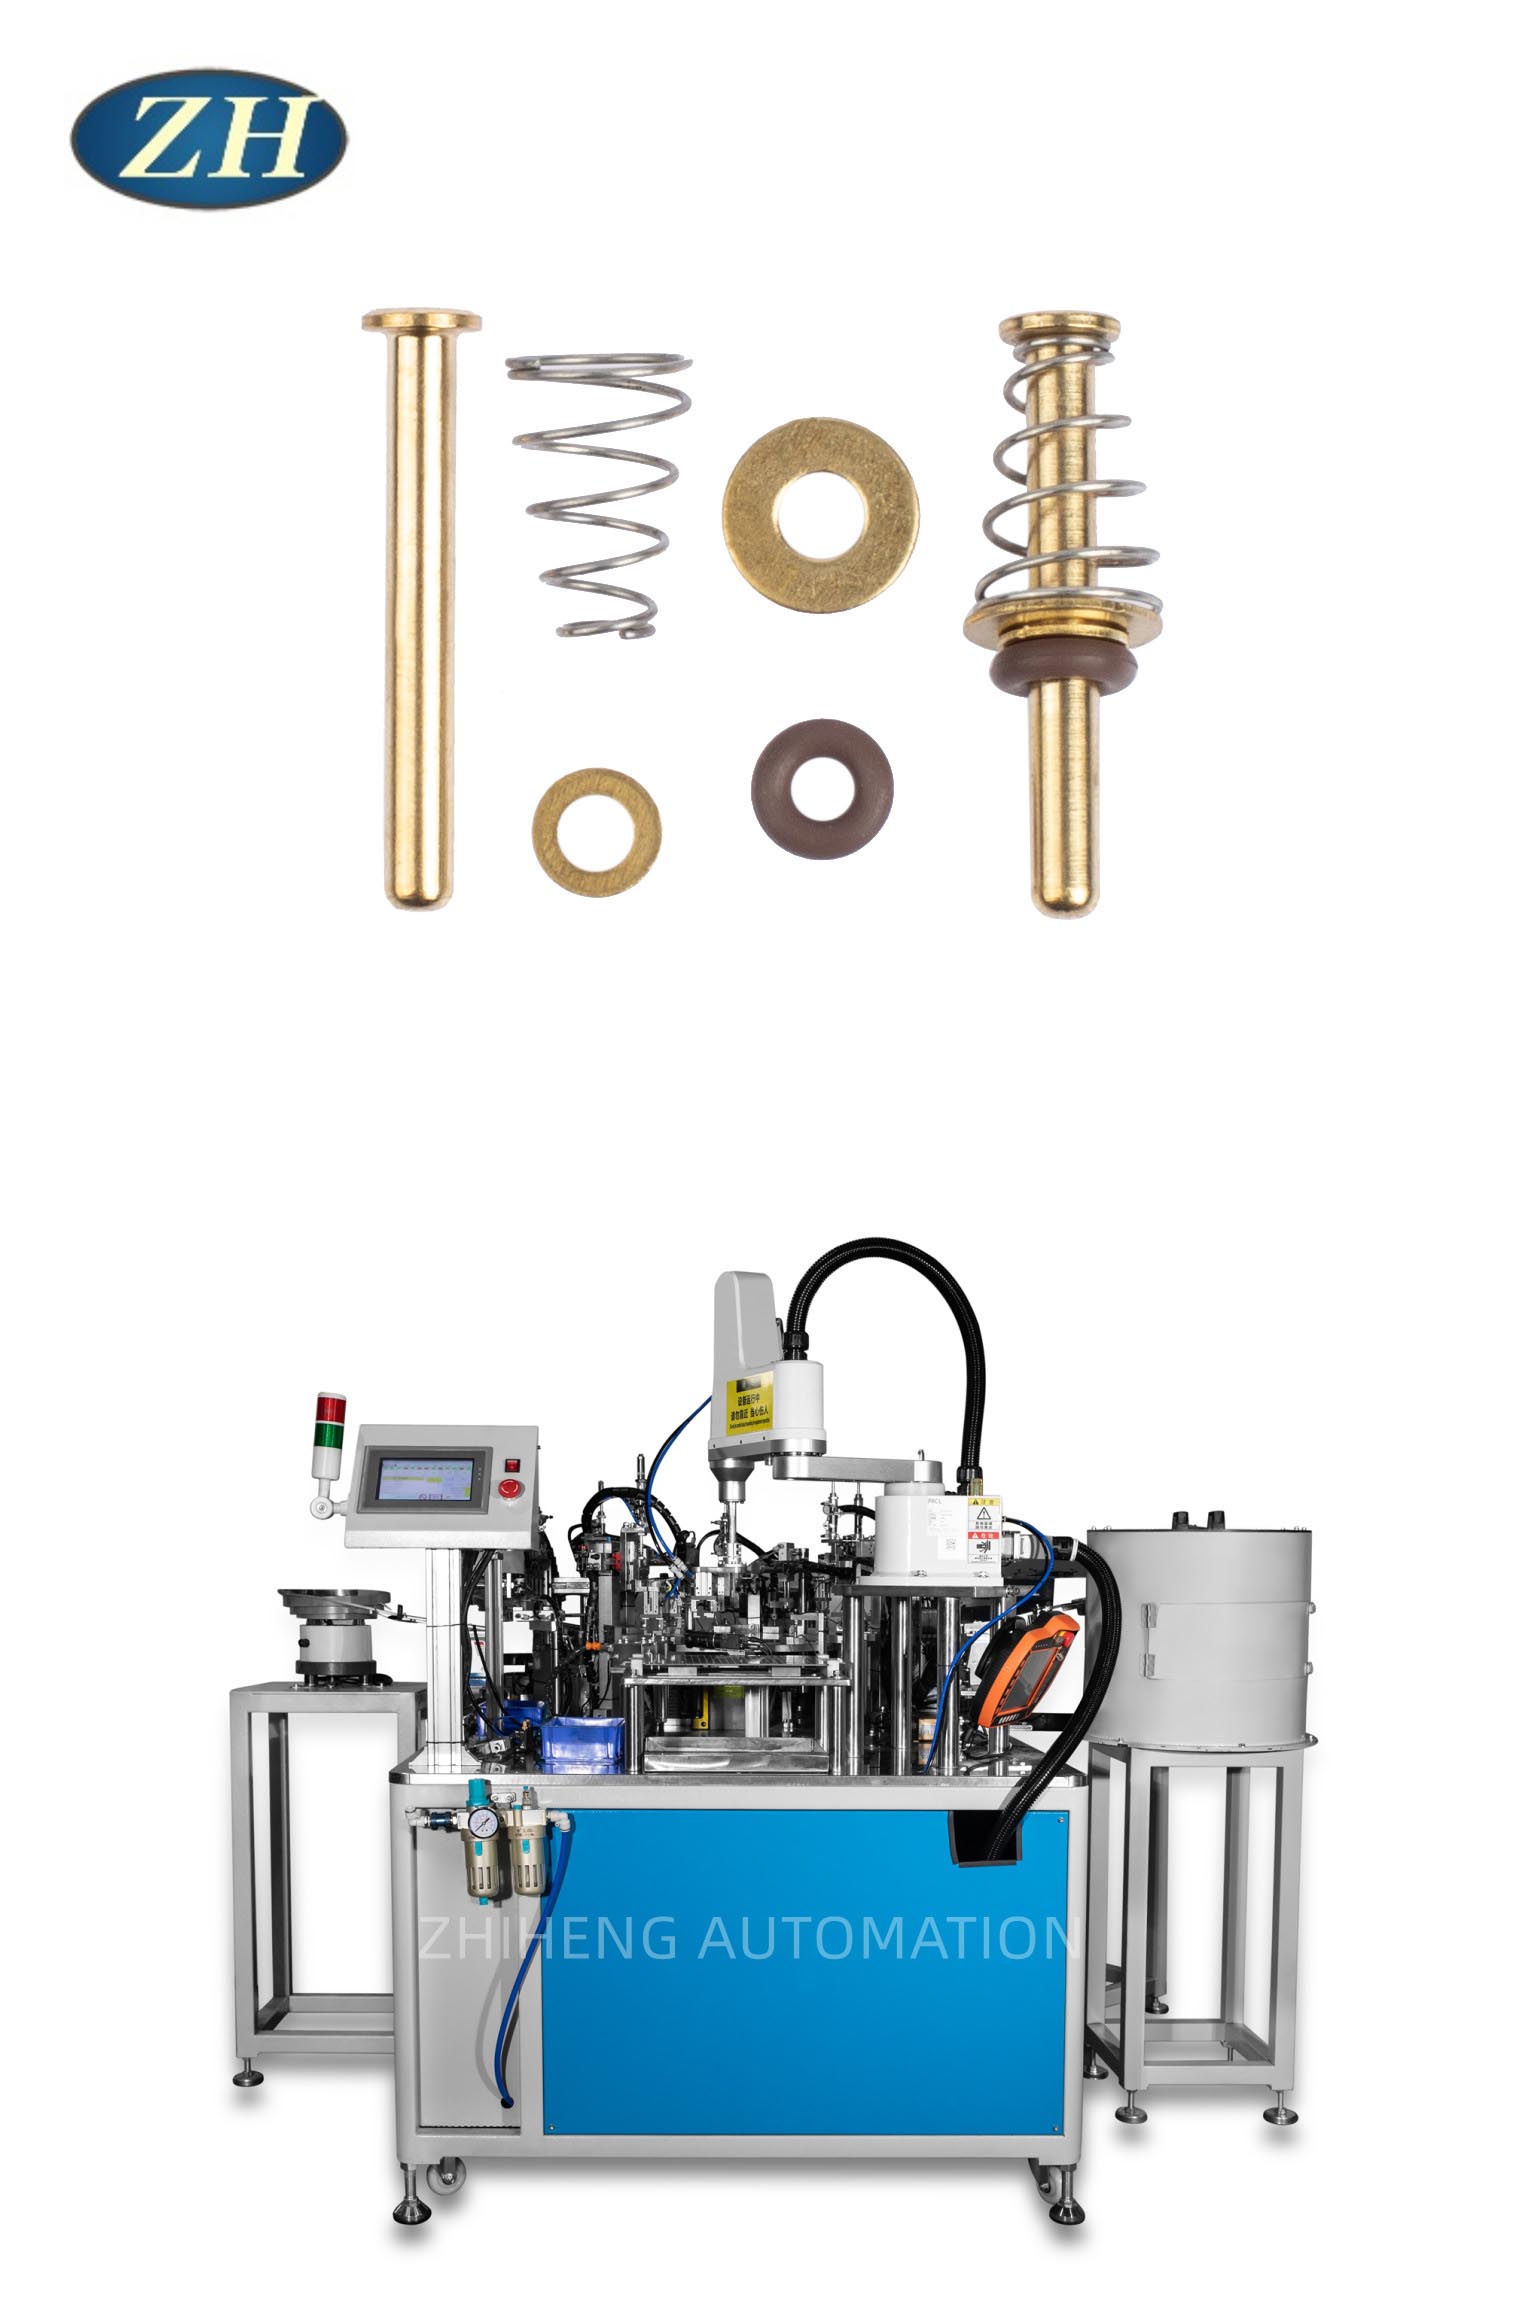 새로운 수전 밸브 코어 조립 기계로 생산 효율성 향상